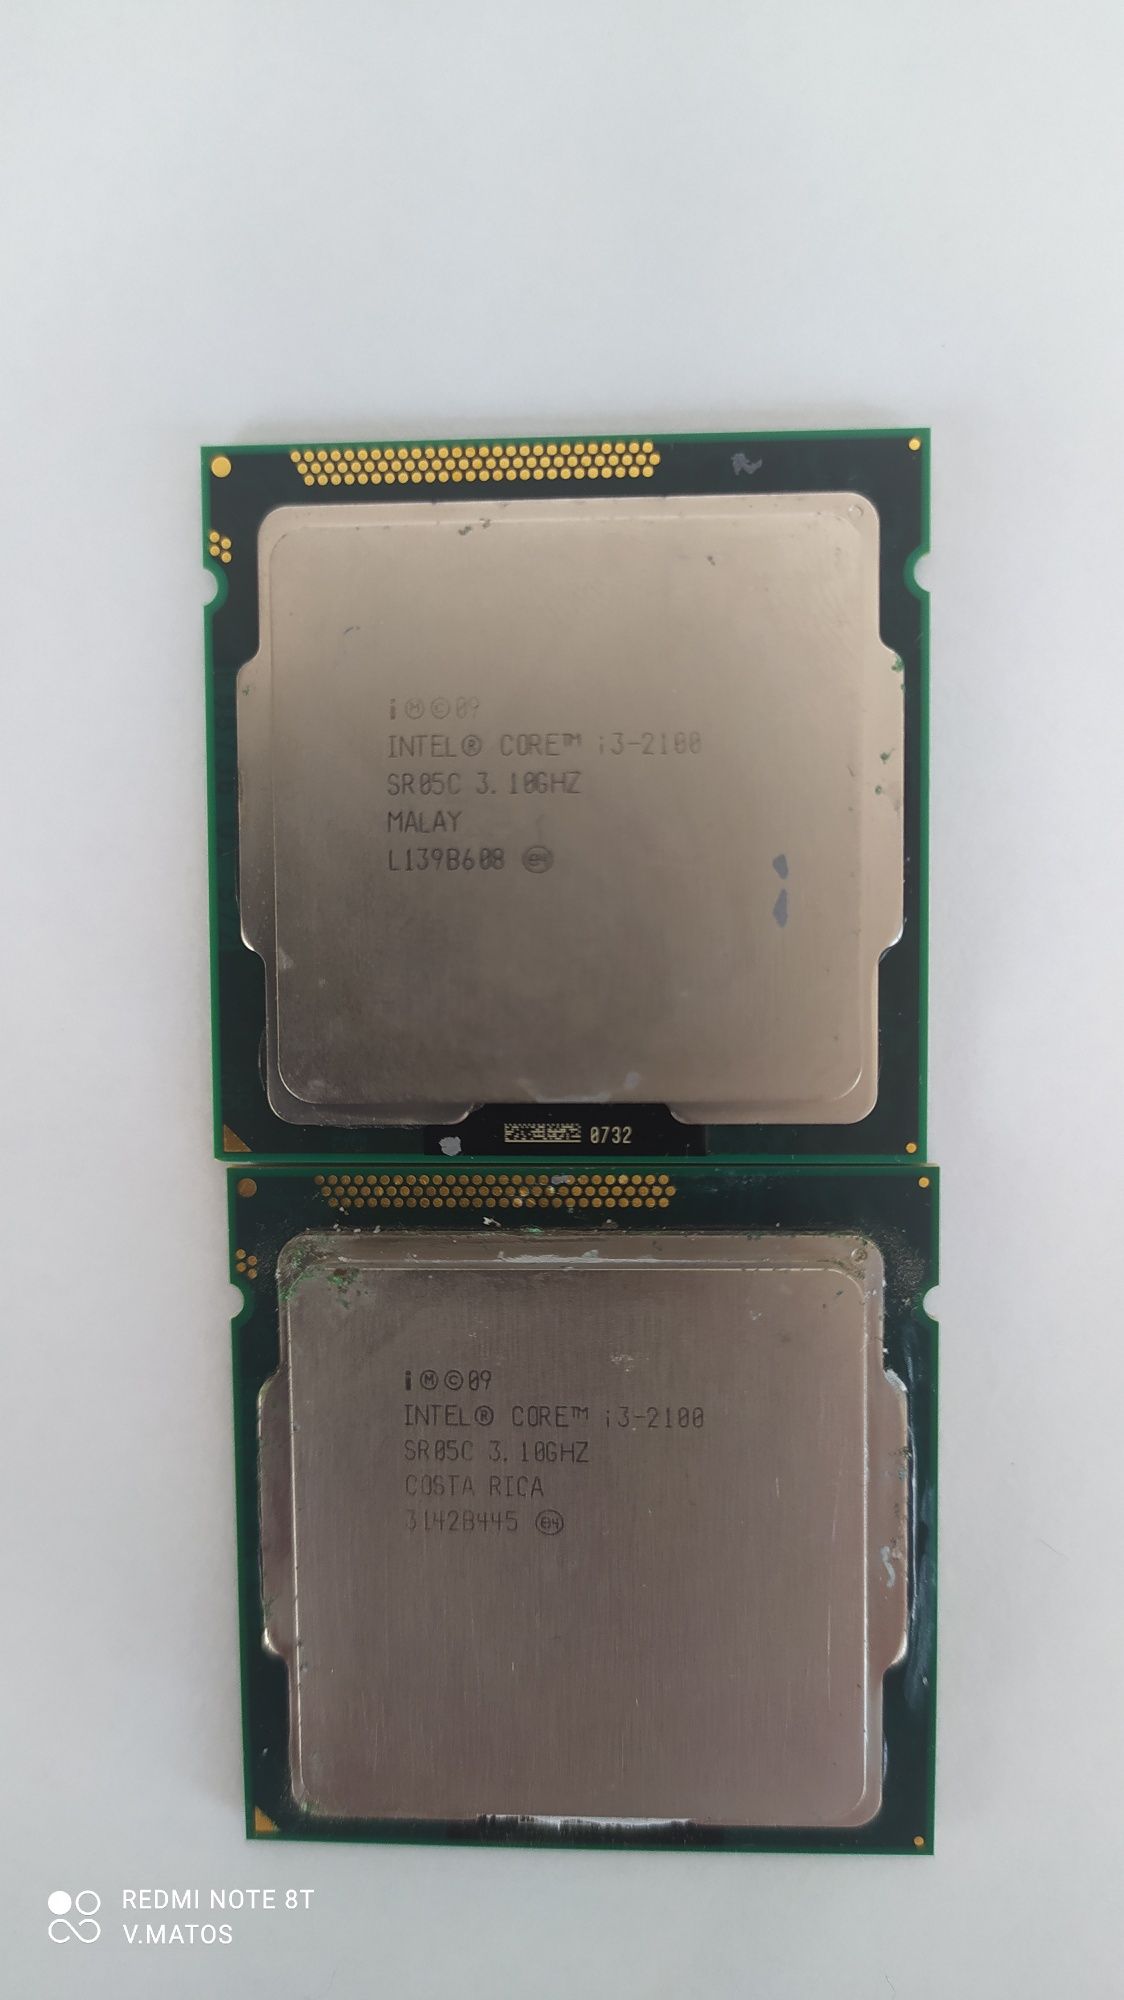 2 Processadores Intel® Core™ i3-2100